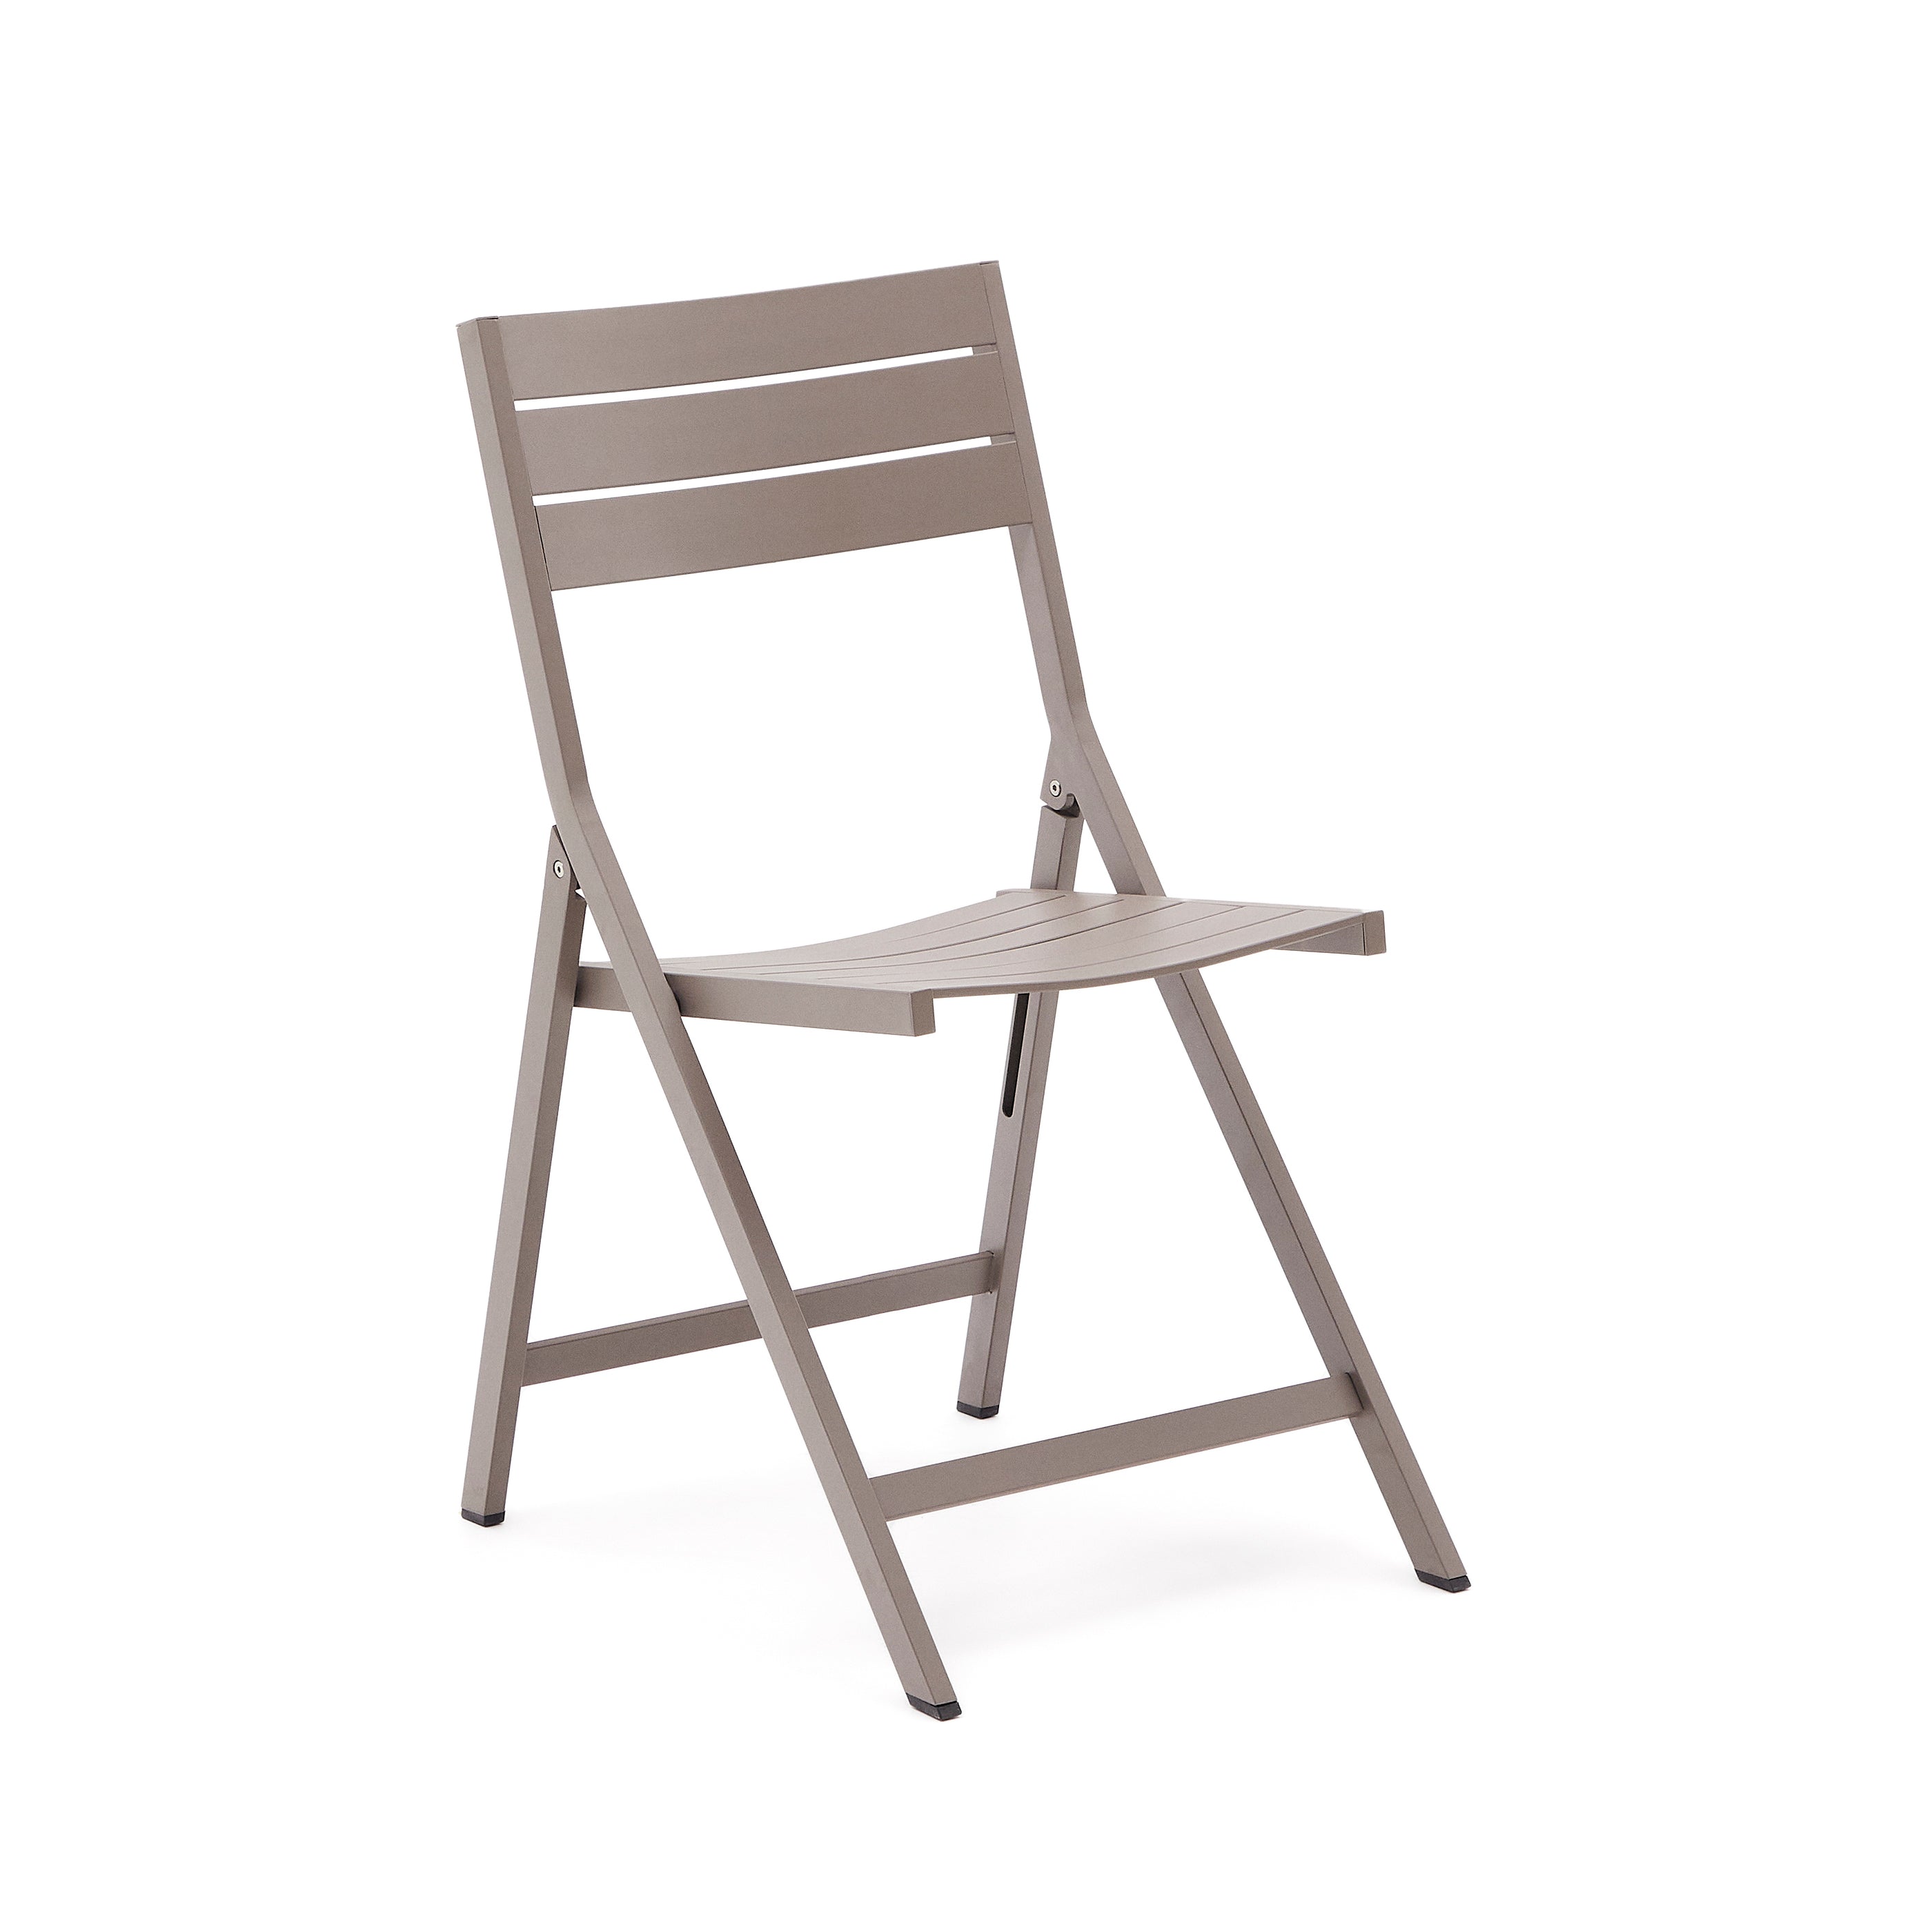 Torreta összecsukható kültéri szék alumíniumból, matt barna befejezéssel